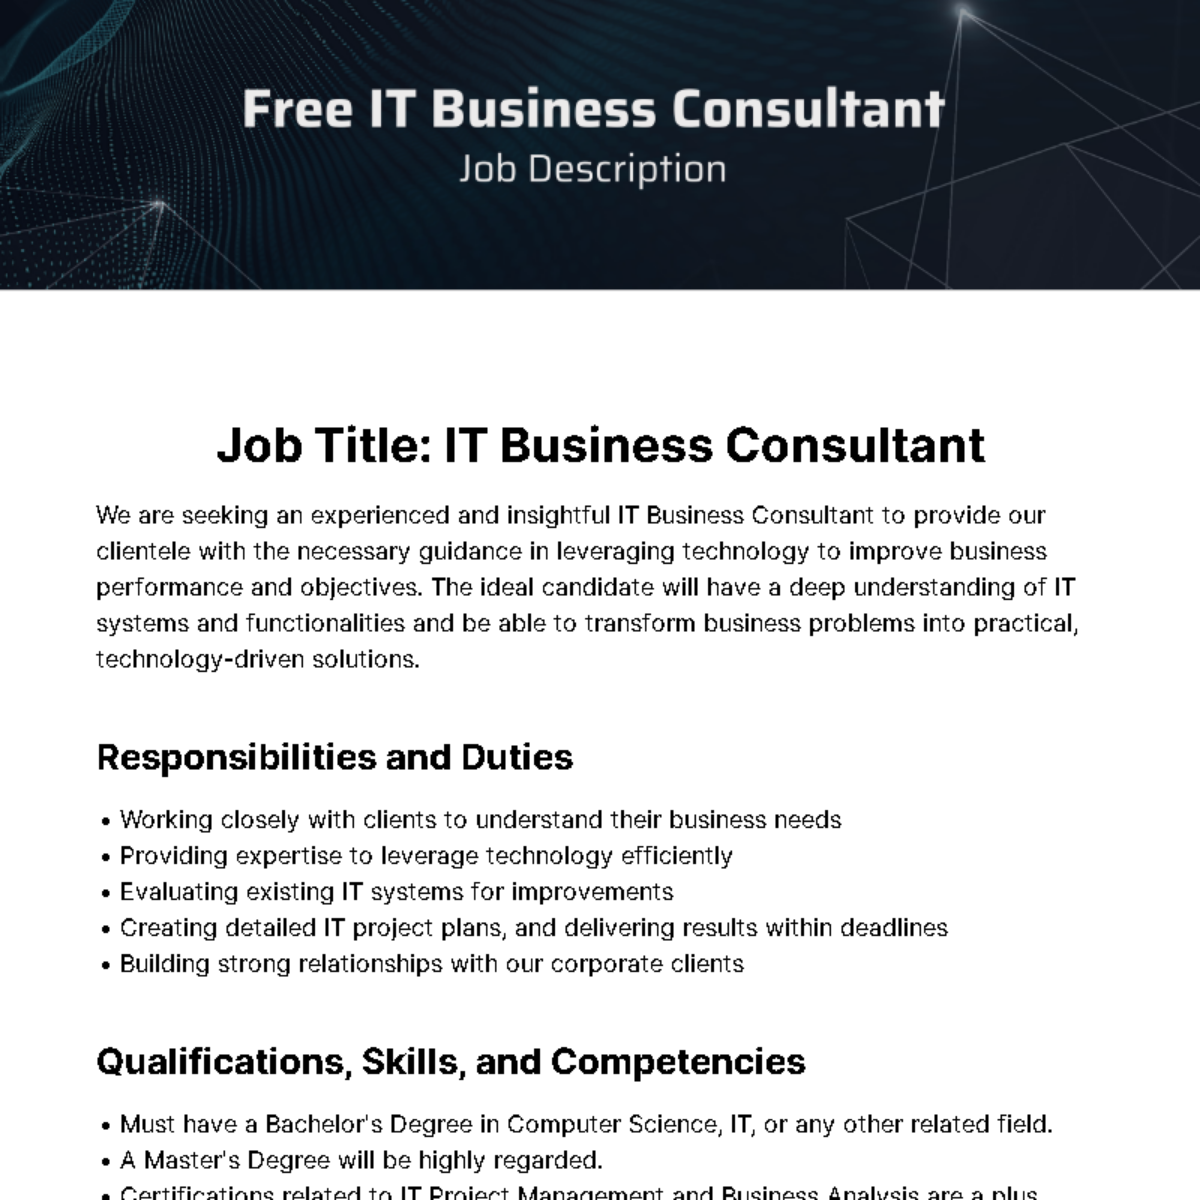 Free IT Business Consultant Job Description Template